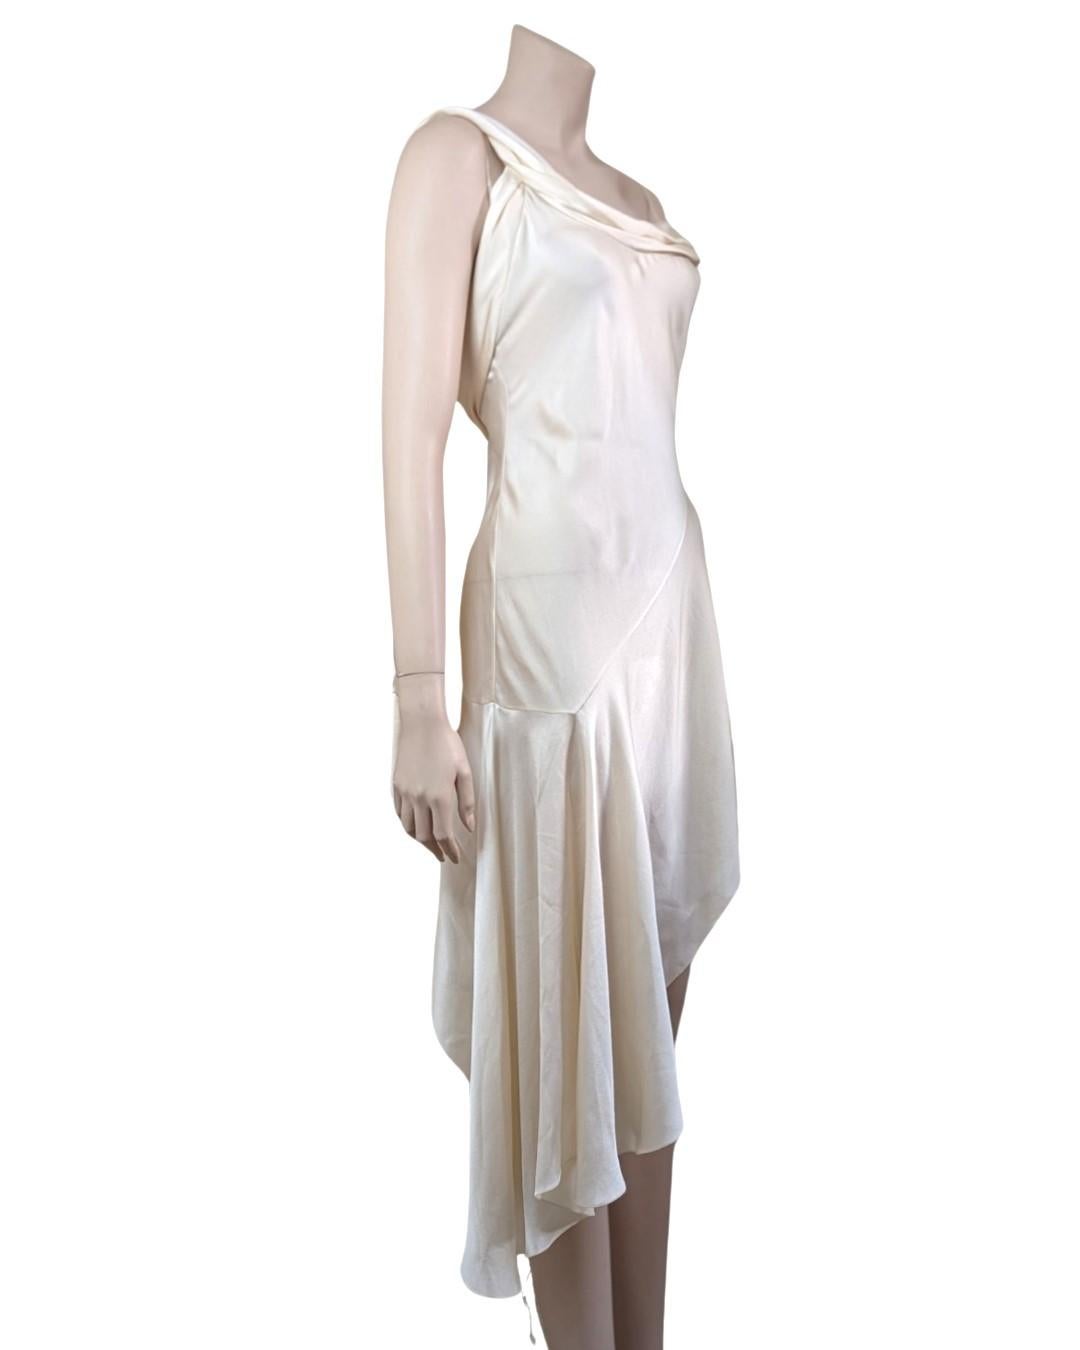 Saint Laurent S/S2016 Asymmetric Silk Dress by Hedi Slimane For Sale 6